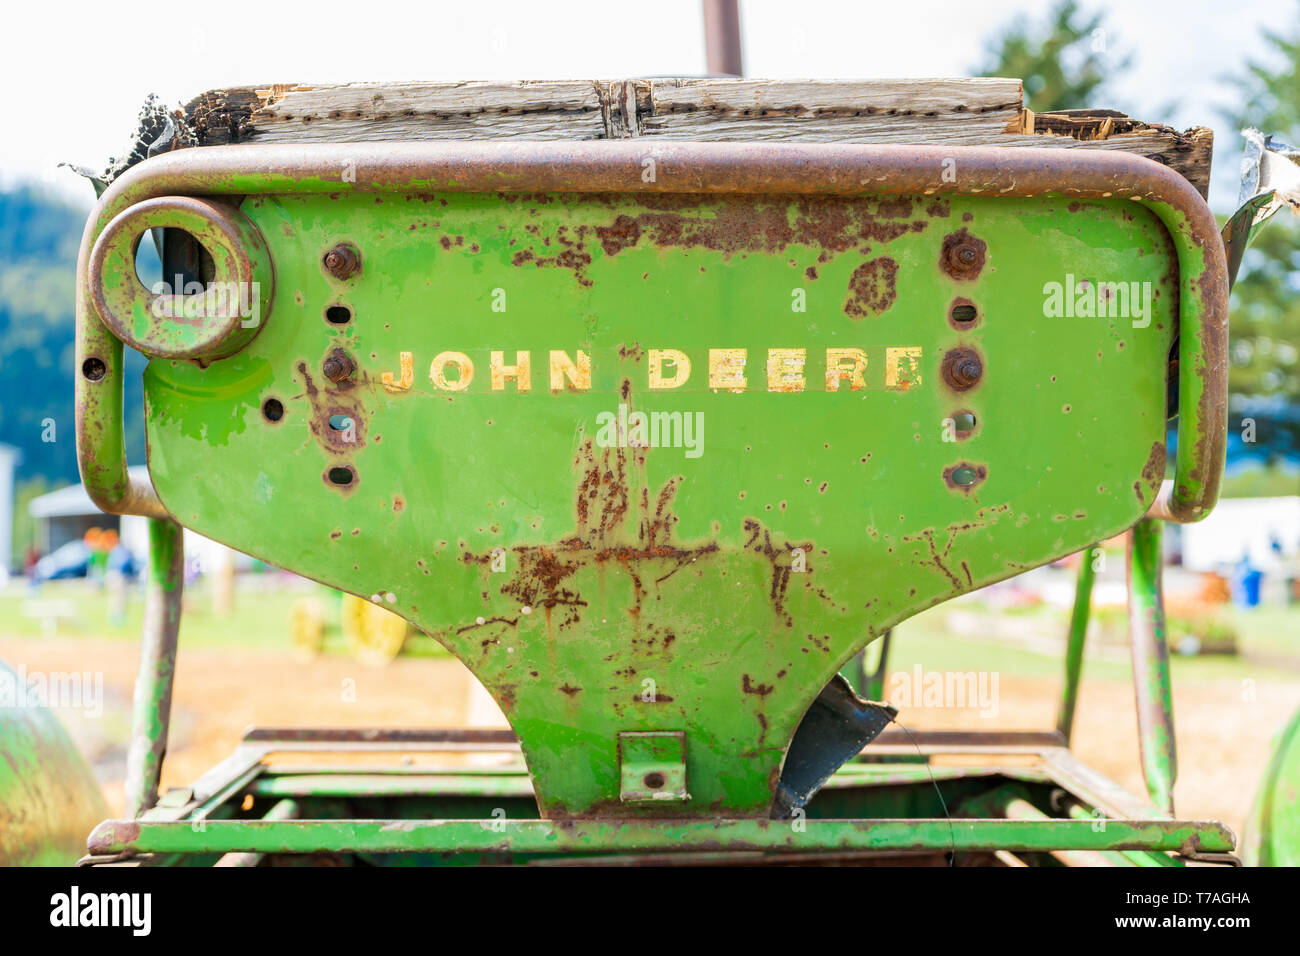 Alte, rostige John Deere Traktor Sitz, mit der Wortmarke Logo auf dem Rücken, abgenutzt. Classic John Deere Bild von einem antiquierten Traktor oder Bauernhof ausstatten Stockfoto